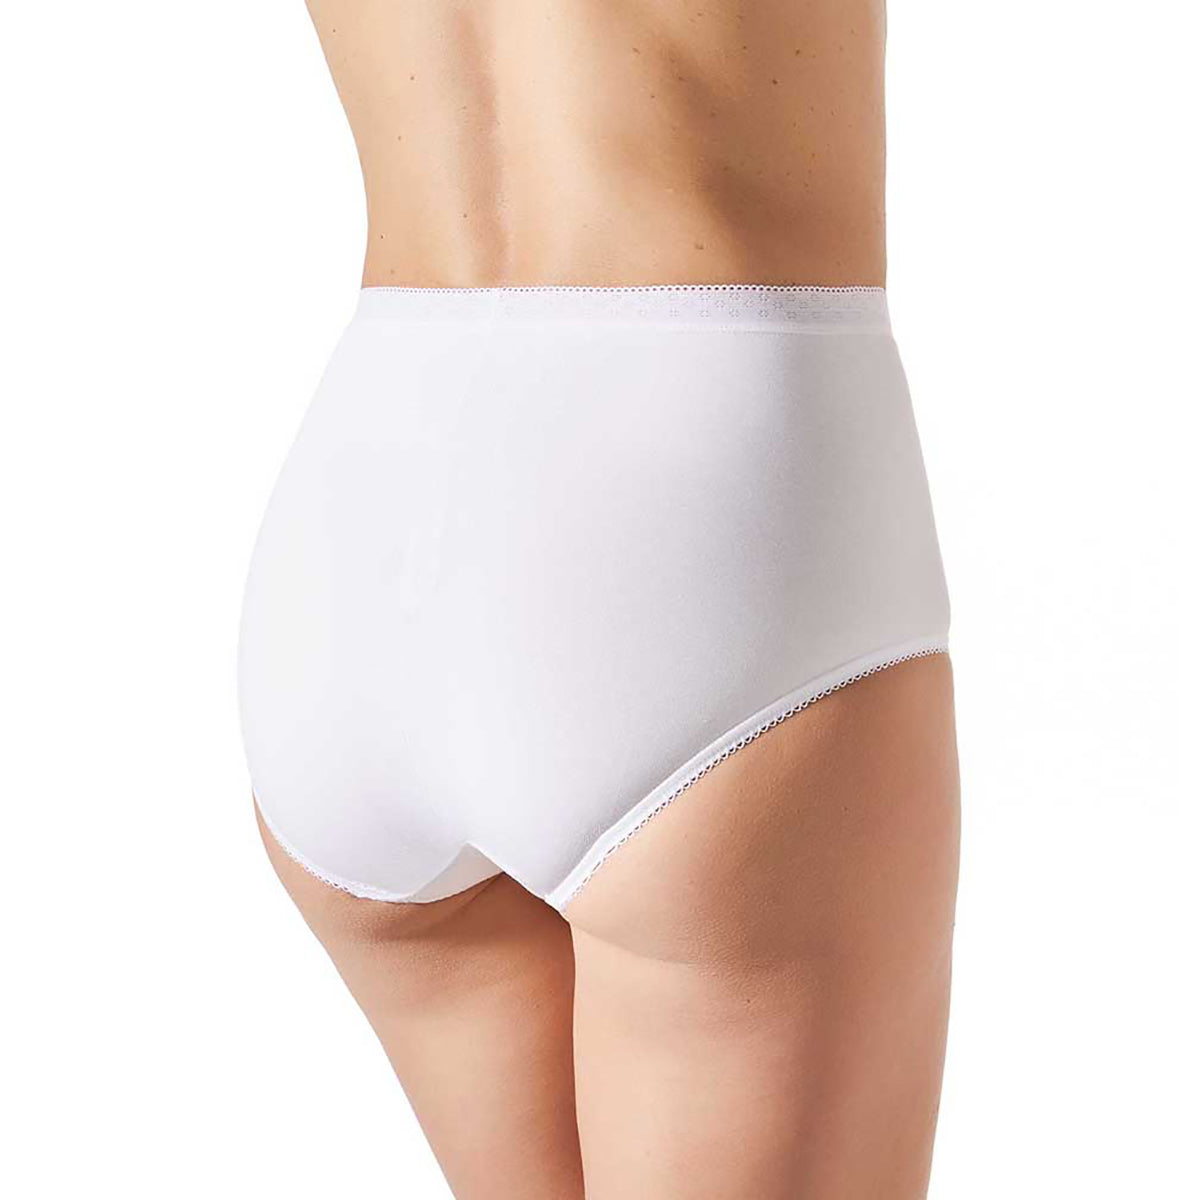 High-waist compression briefs - Underwear - UNDERWEAR, PYJAMAS - Woman 